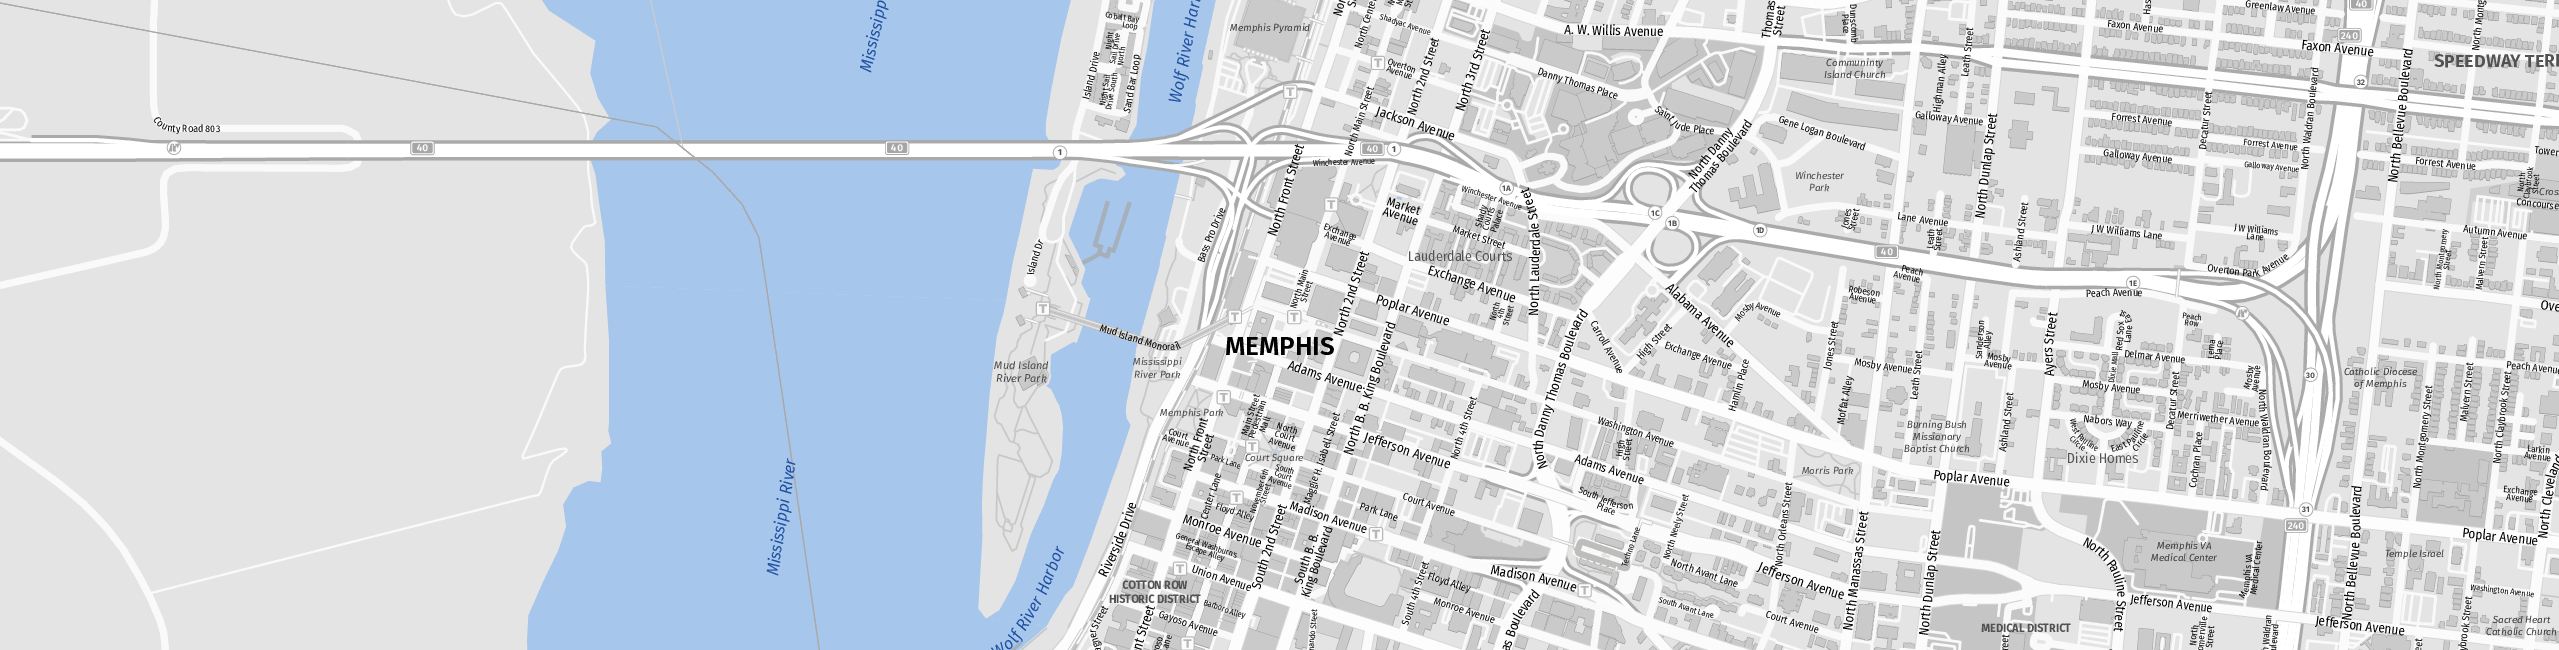 Stadtplan Memphis zum Downloaden.